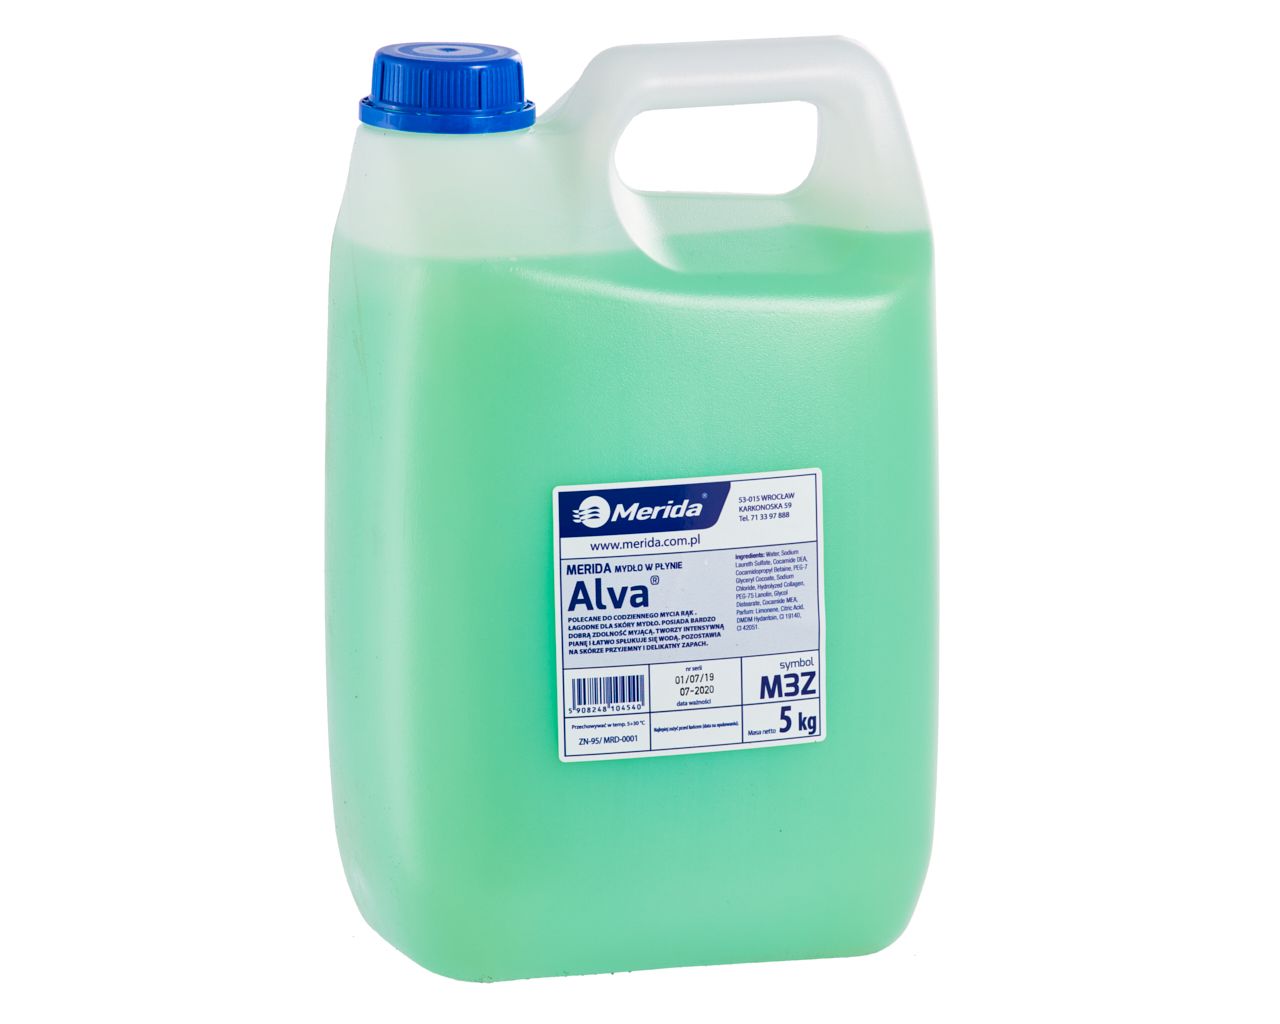 MERIDA ALVA - liquid soap 5 kg, green